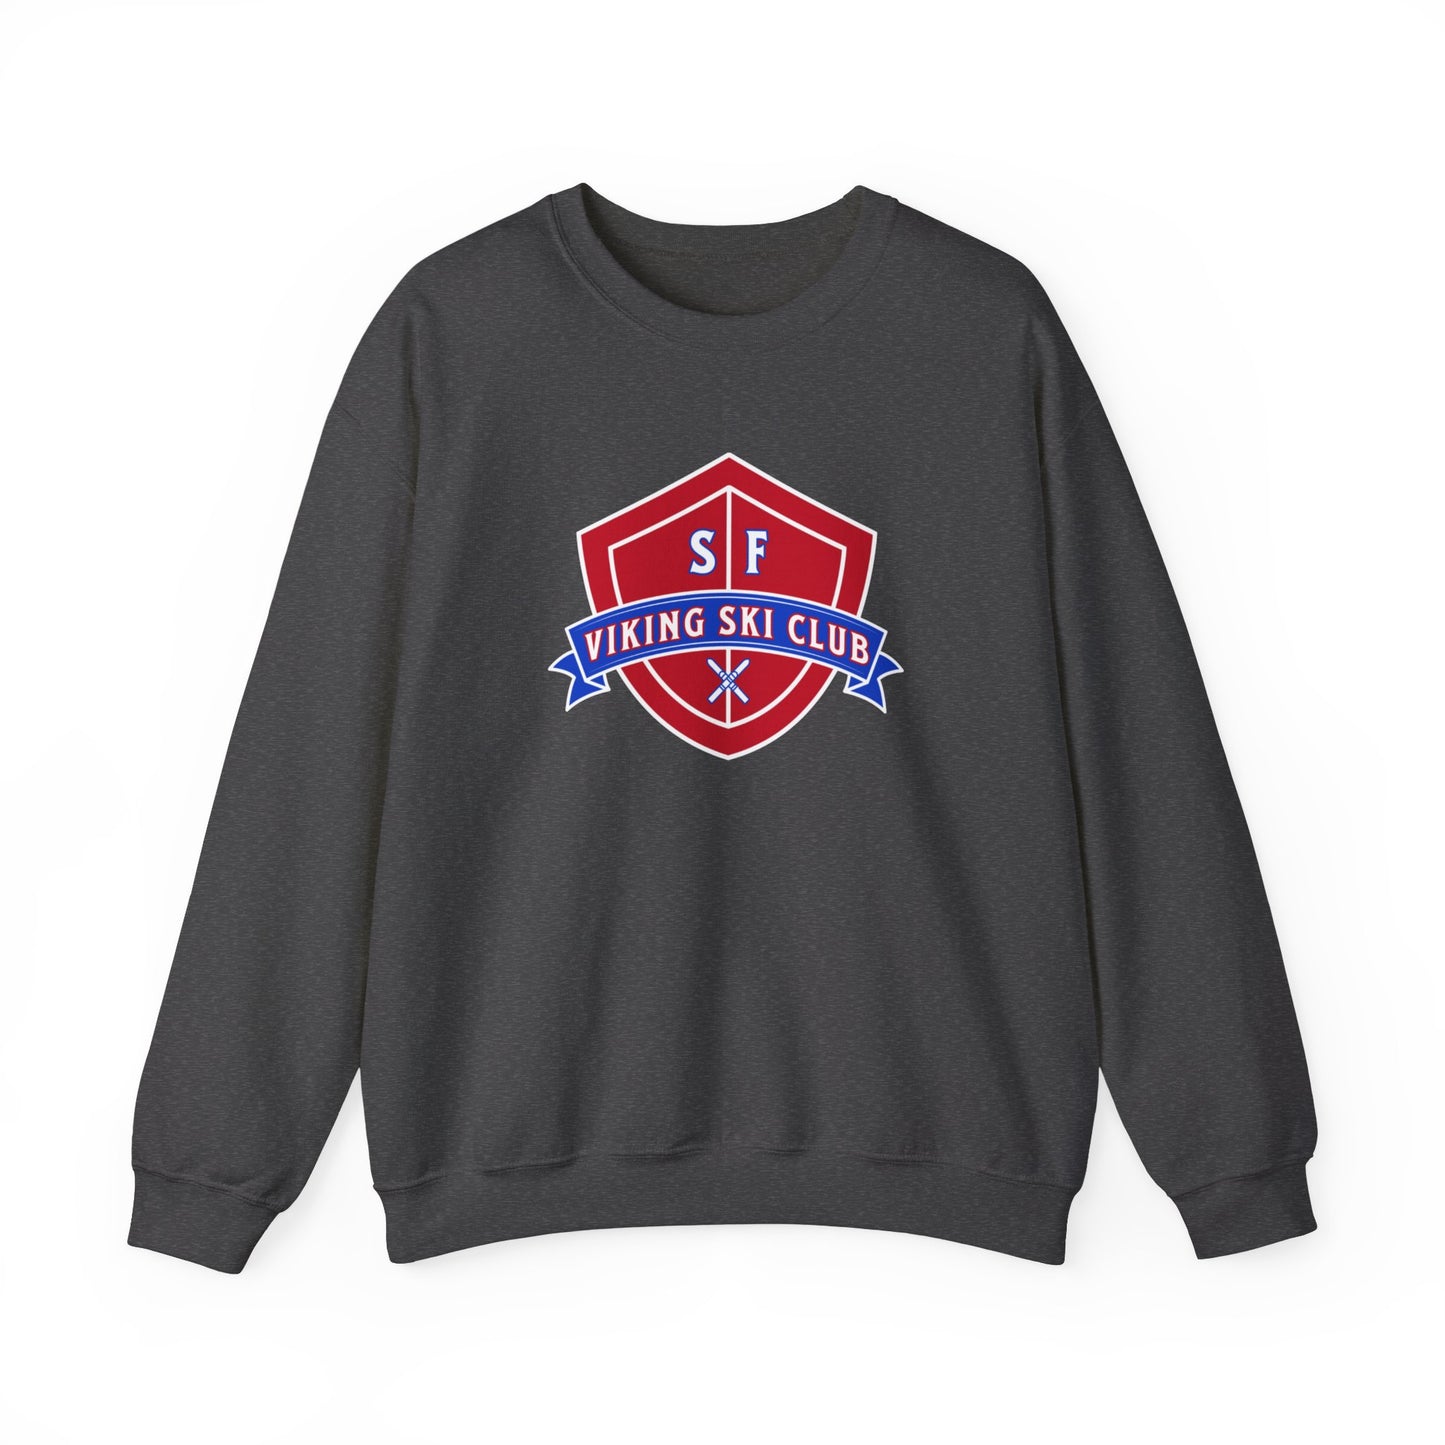 SF Viking Ski Club Crewneck Sweatshirt